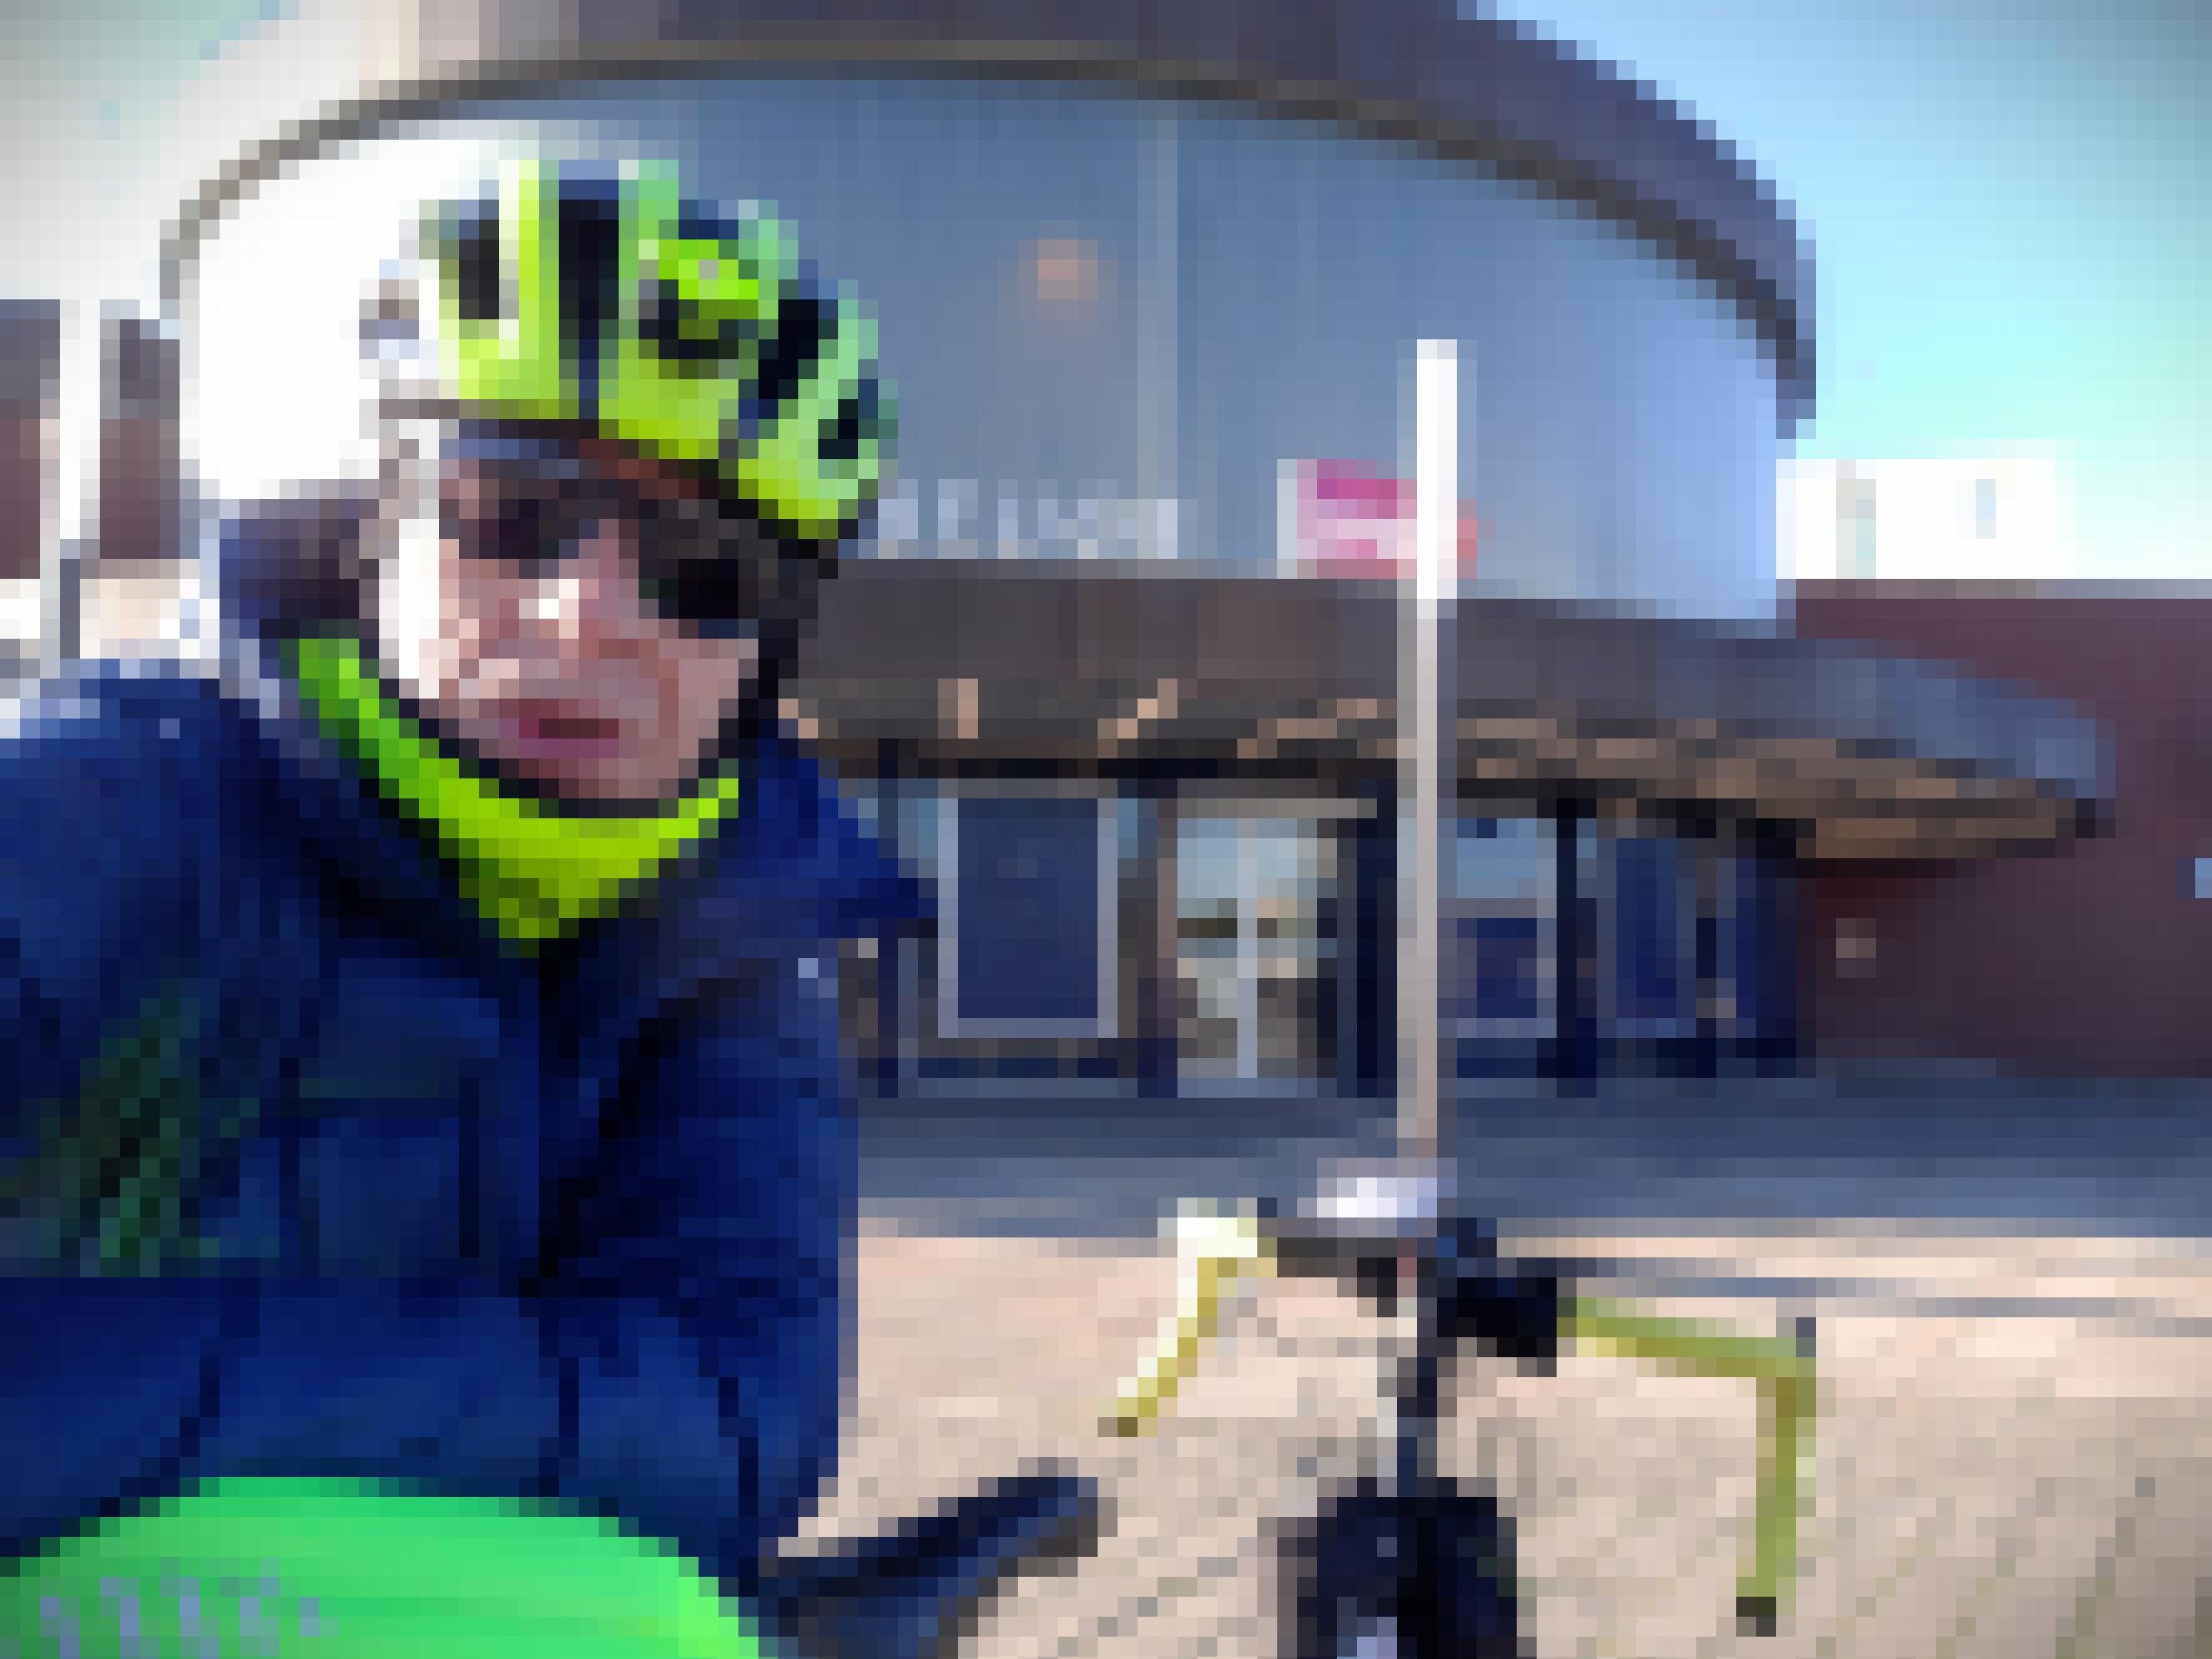 Der eingemummelte Autor mit seinem Rennrad vor dem Bahnhof von Maubeuge, Département Nord.